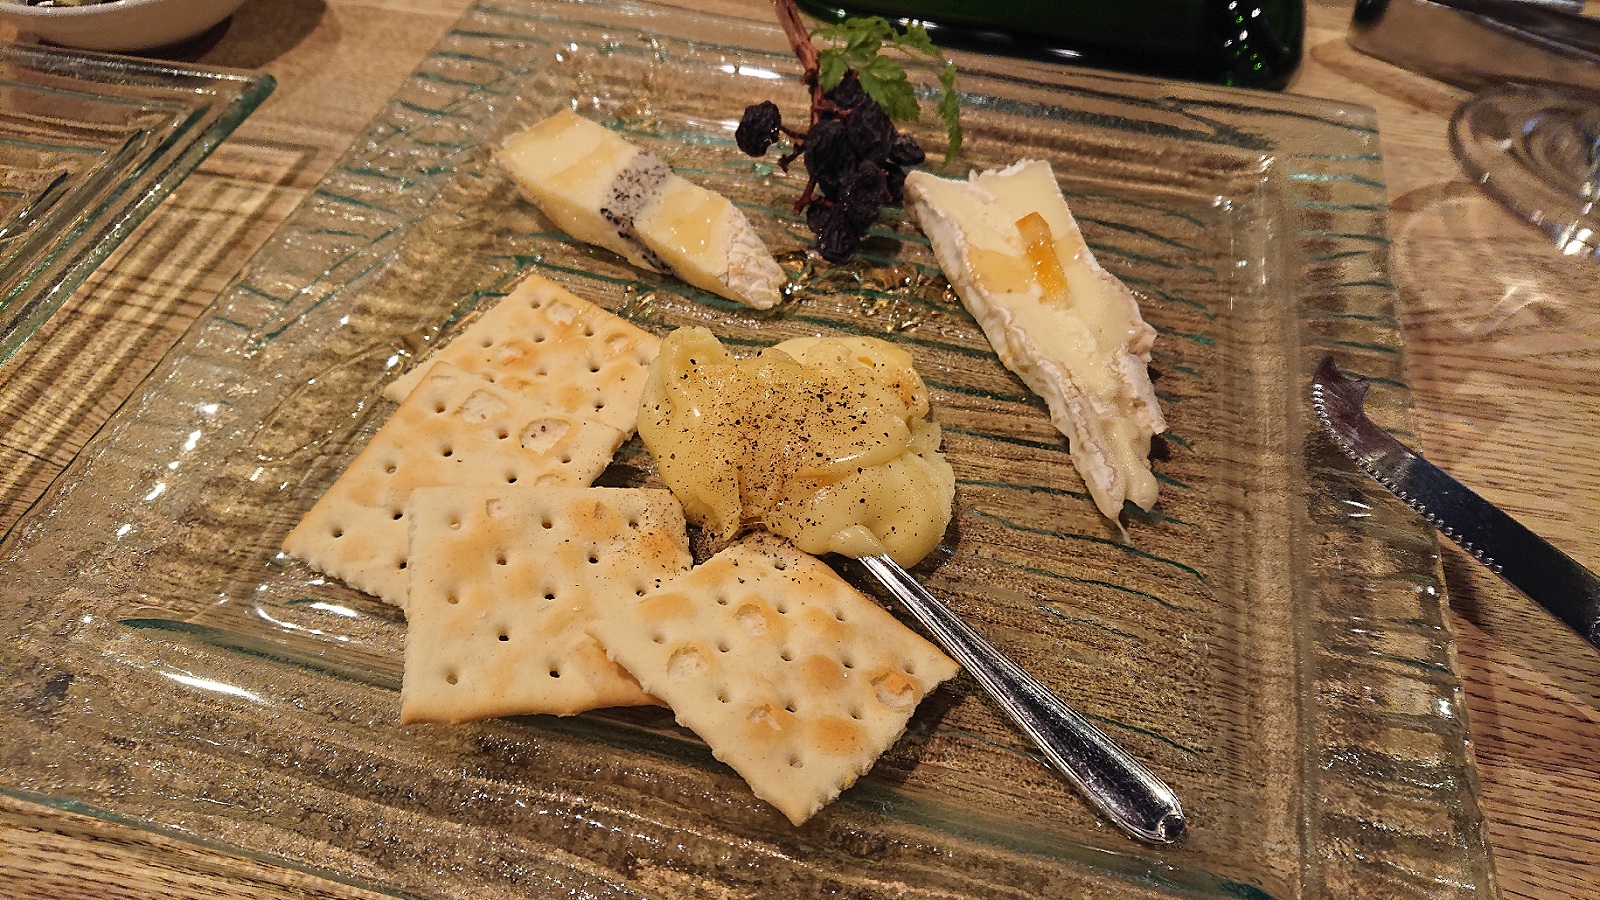 「シェーブルチーズ」は熟成度合いによって食べ方を変えられる